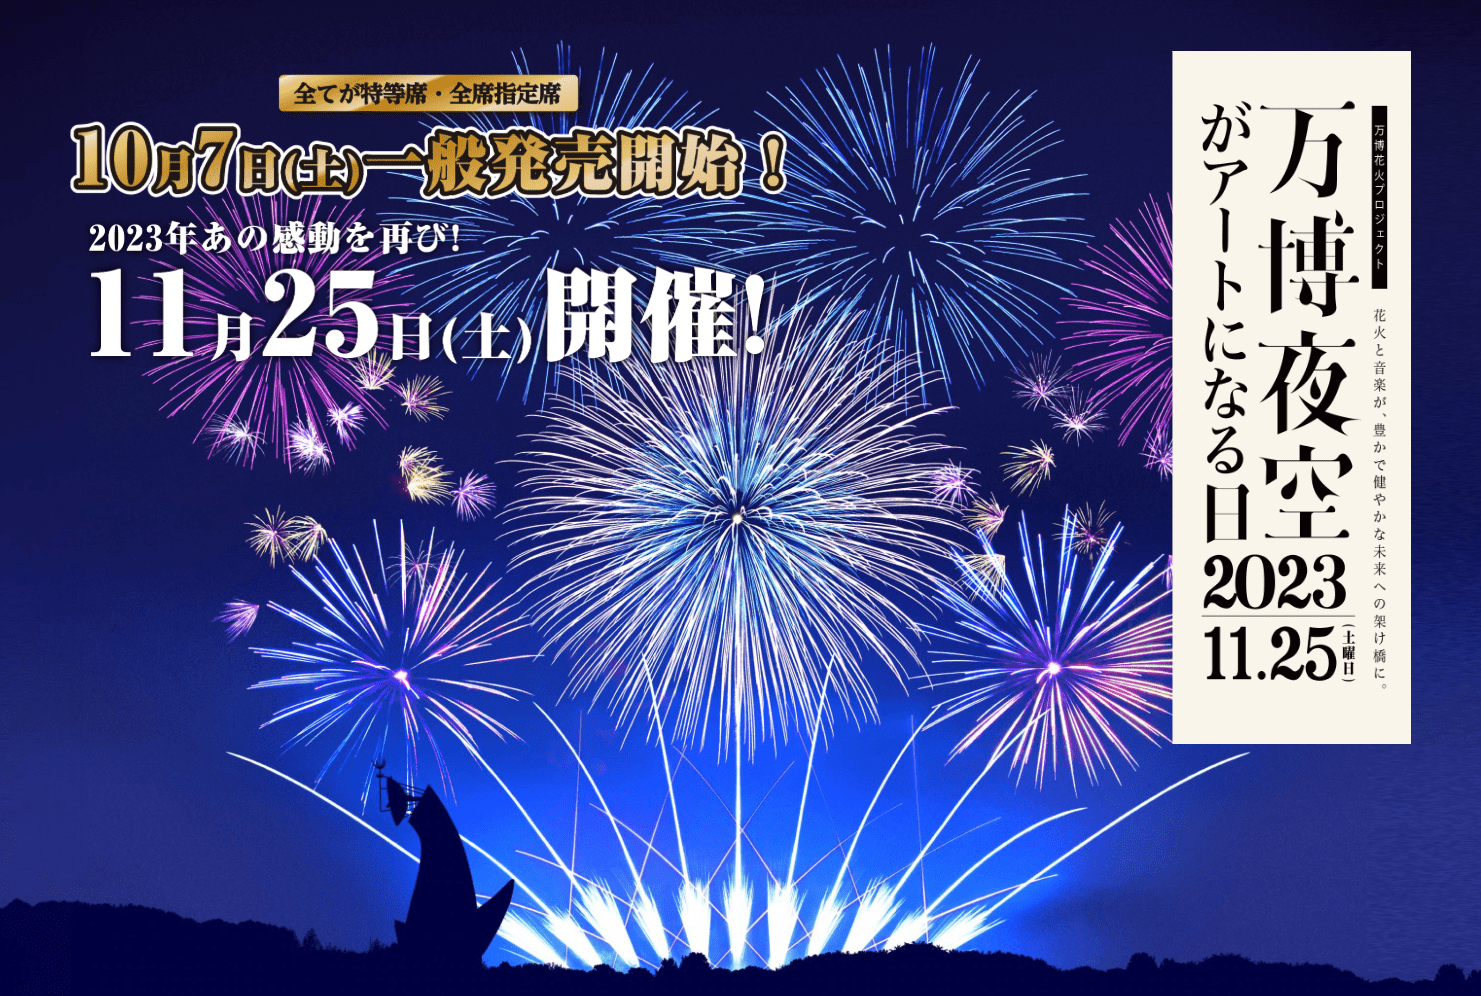 2023.11.25 – 万博花火大会にてハートビートディキシーランドが演奏 - JAZZ CITY OSAKA